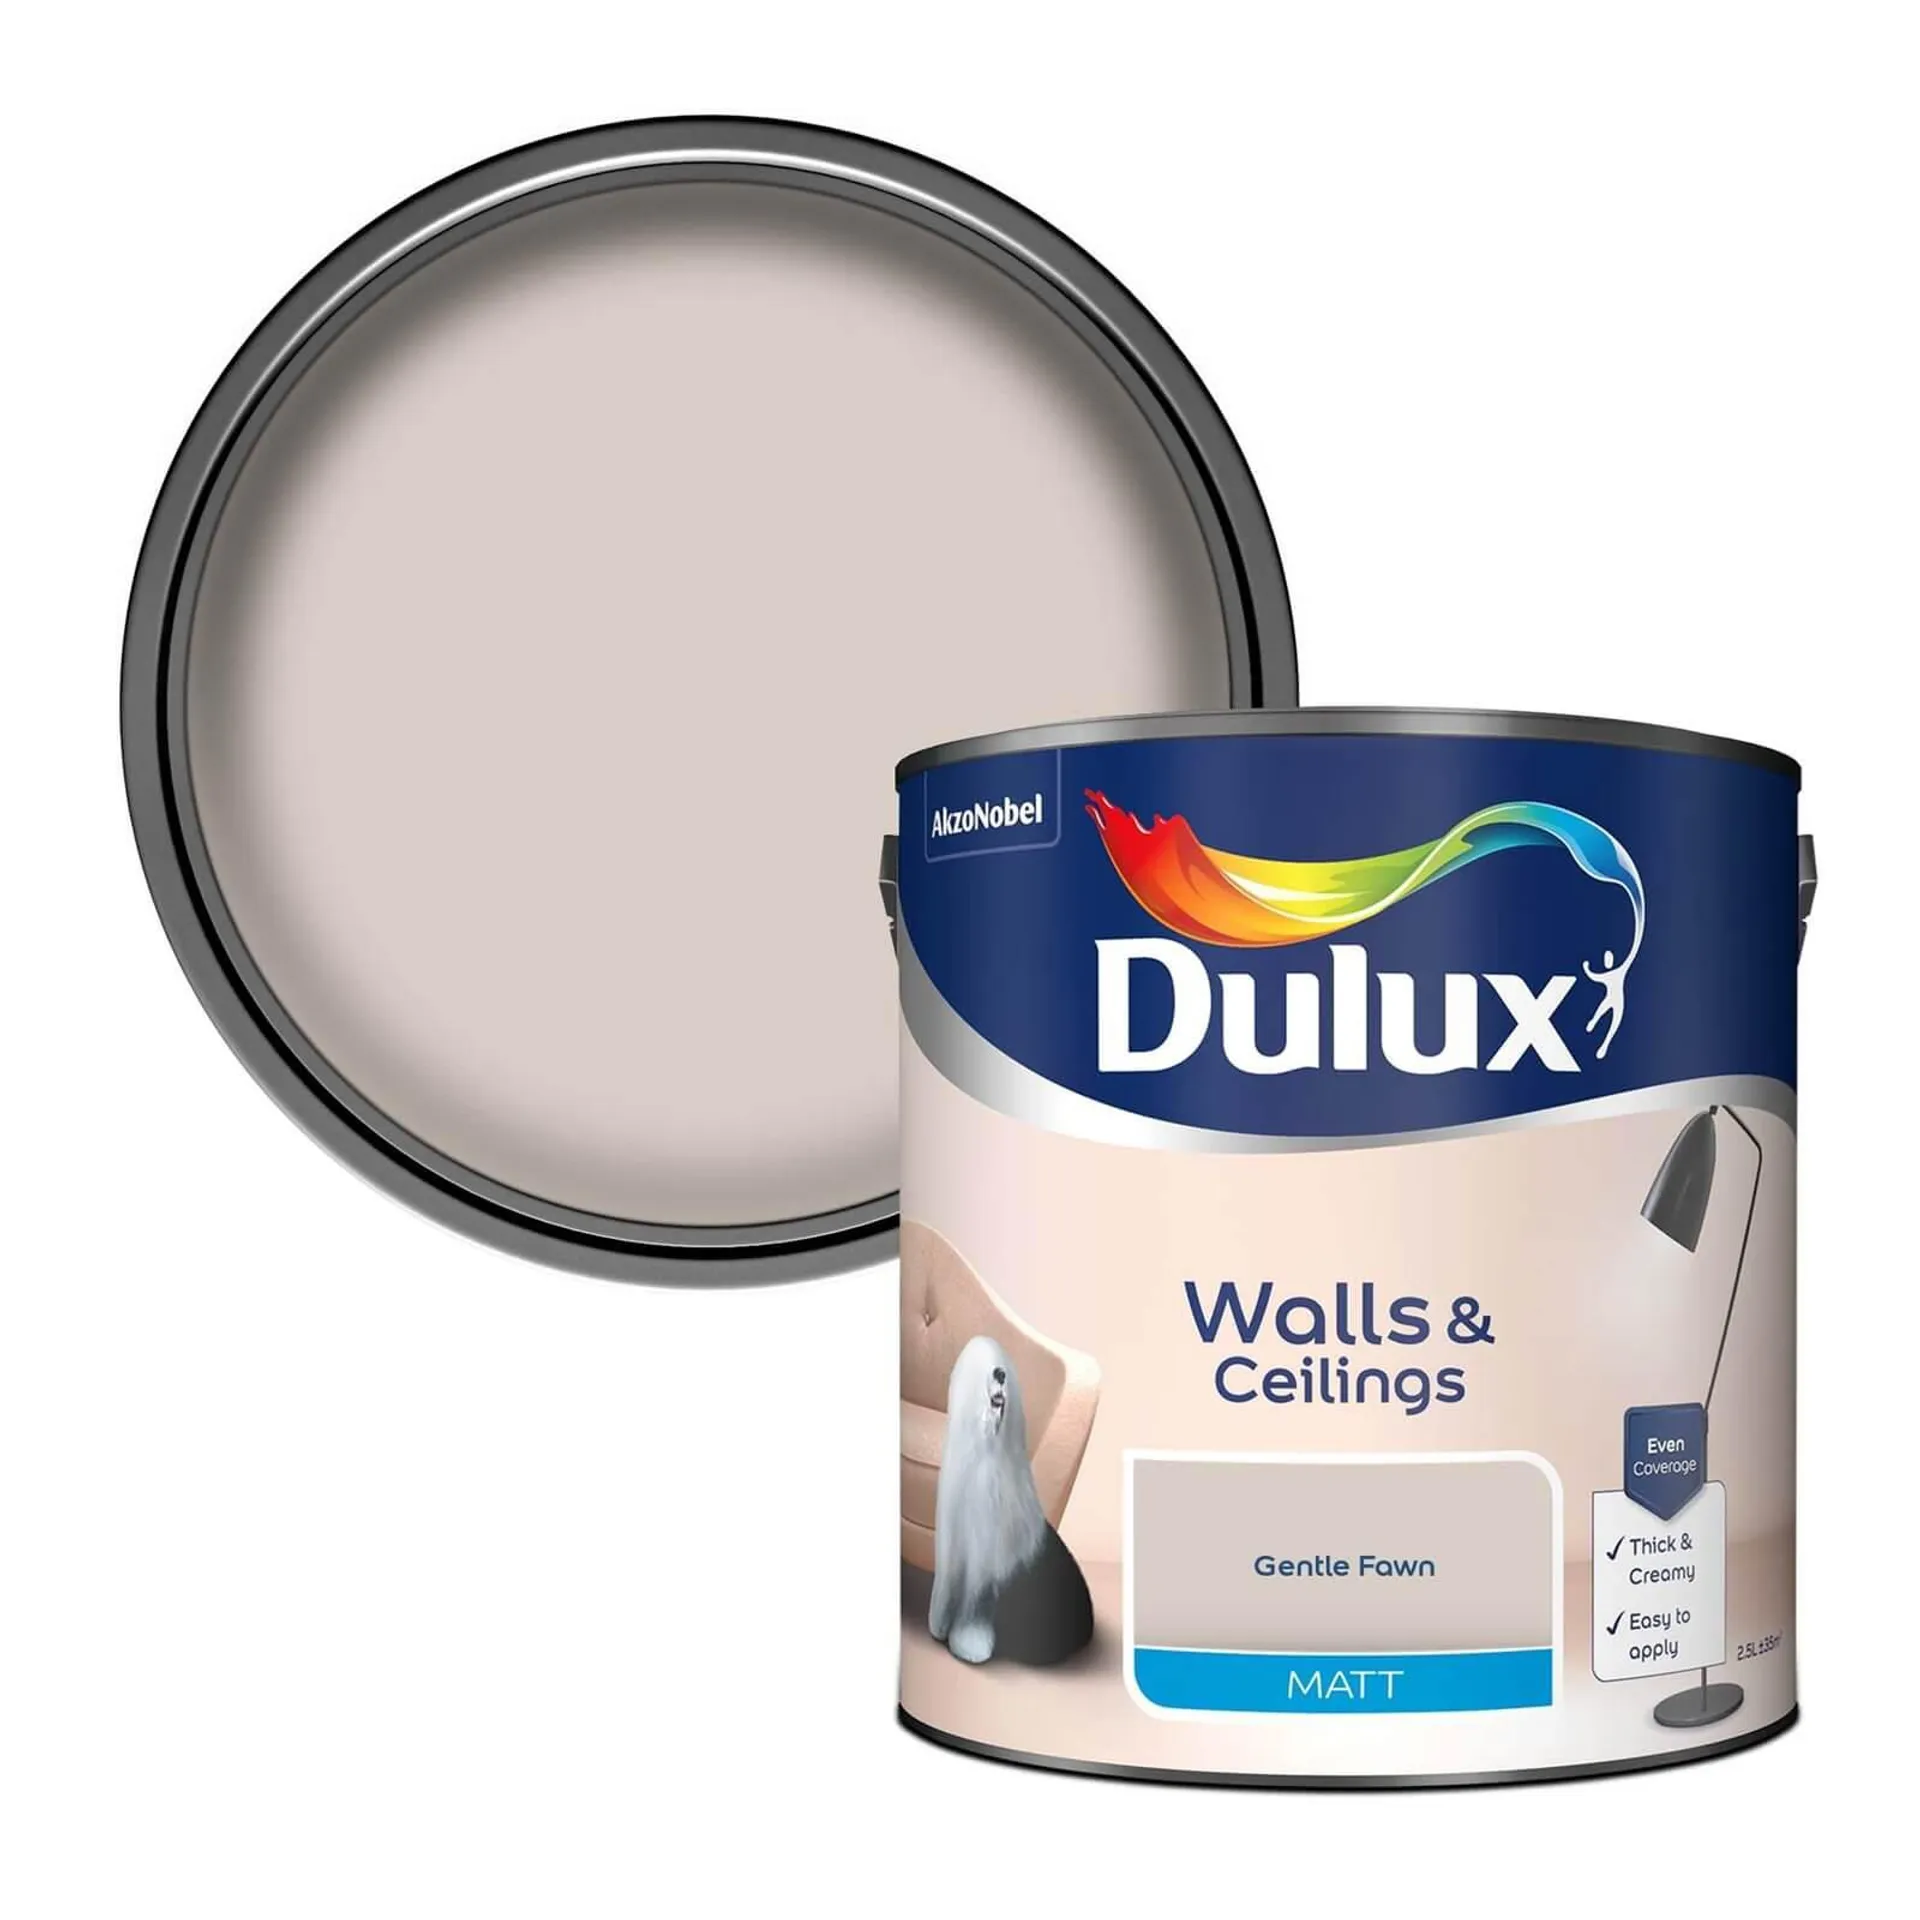 Dulux Matt Emulsion Paint Gentle Fawn - 2.5L